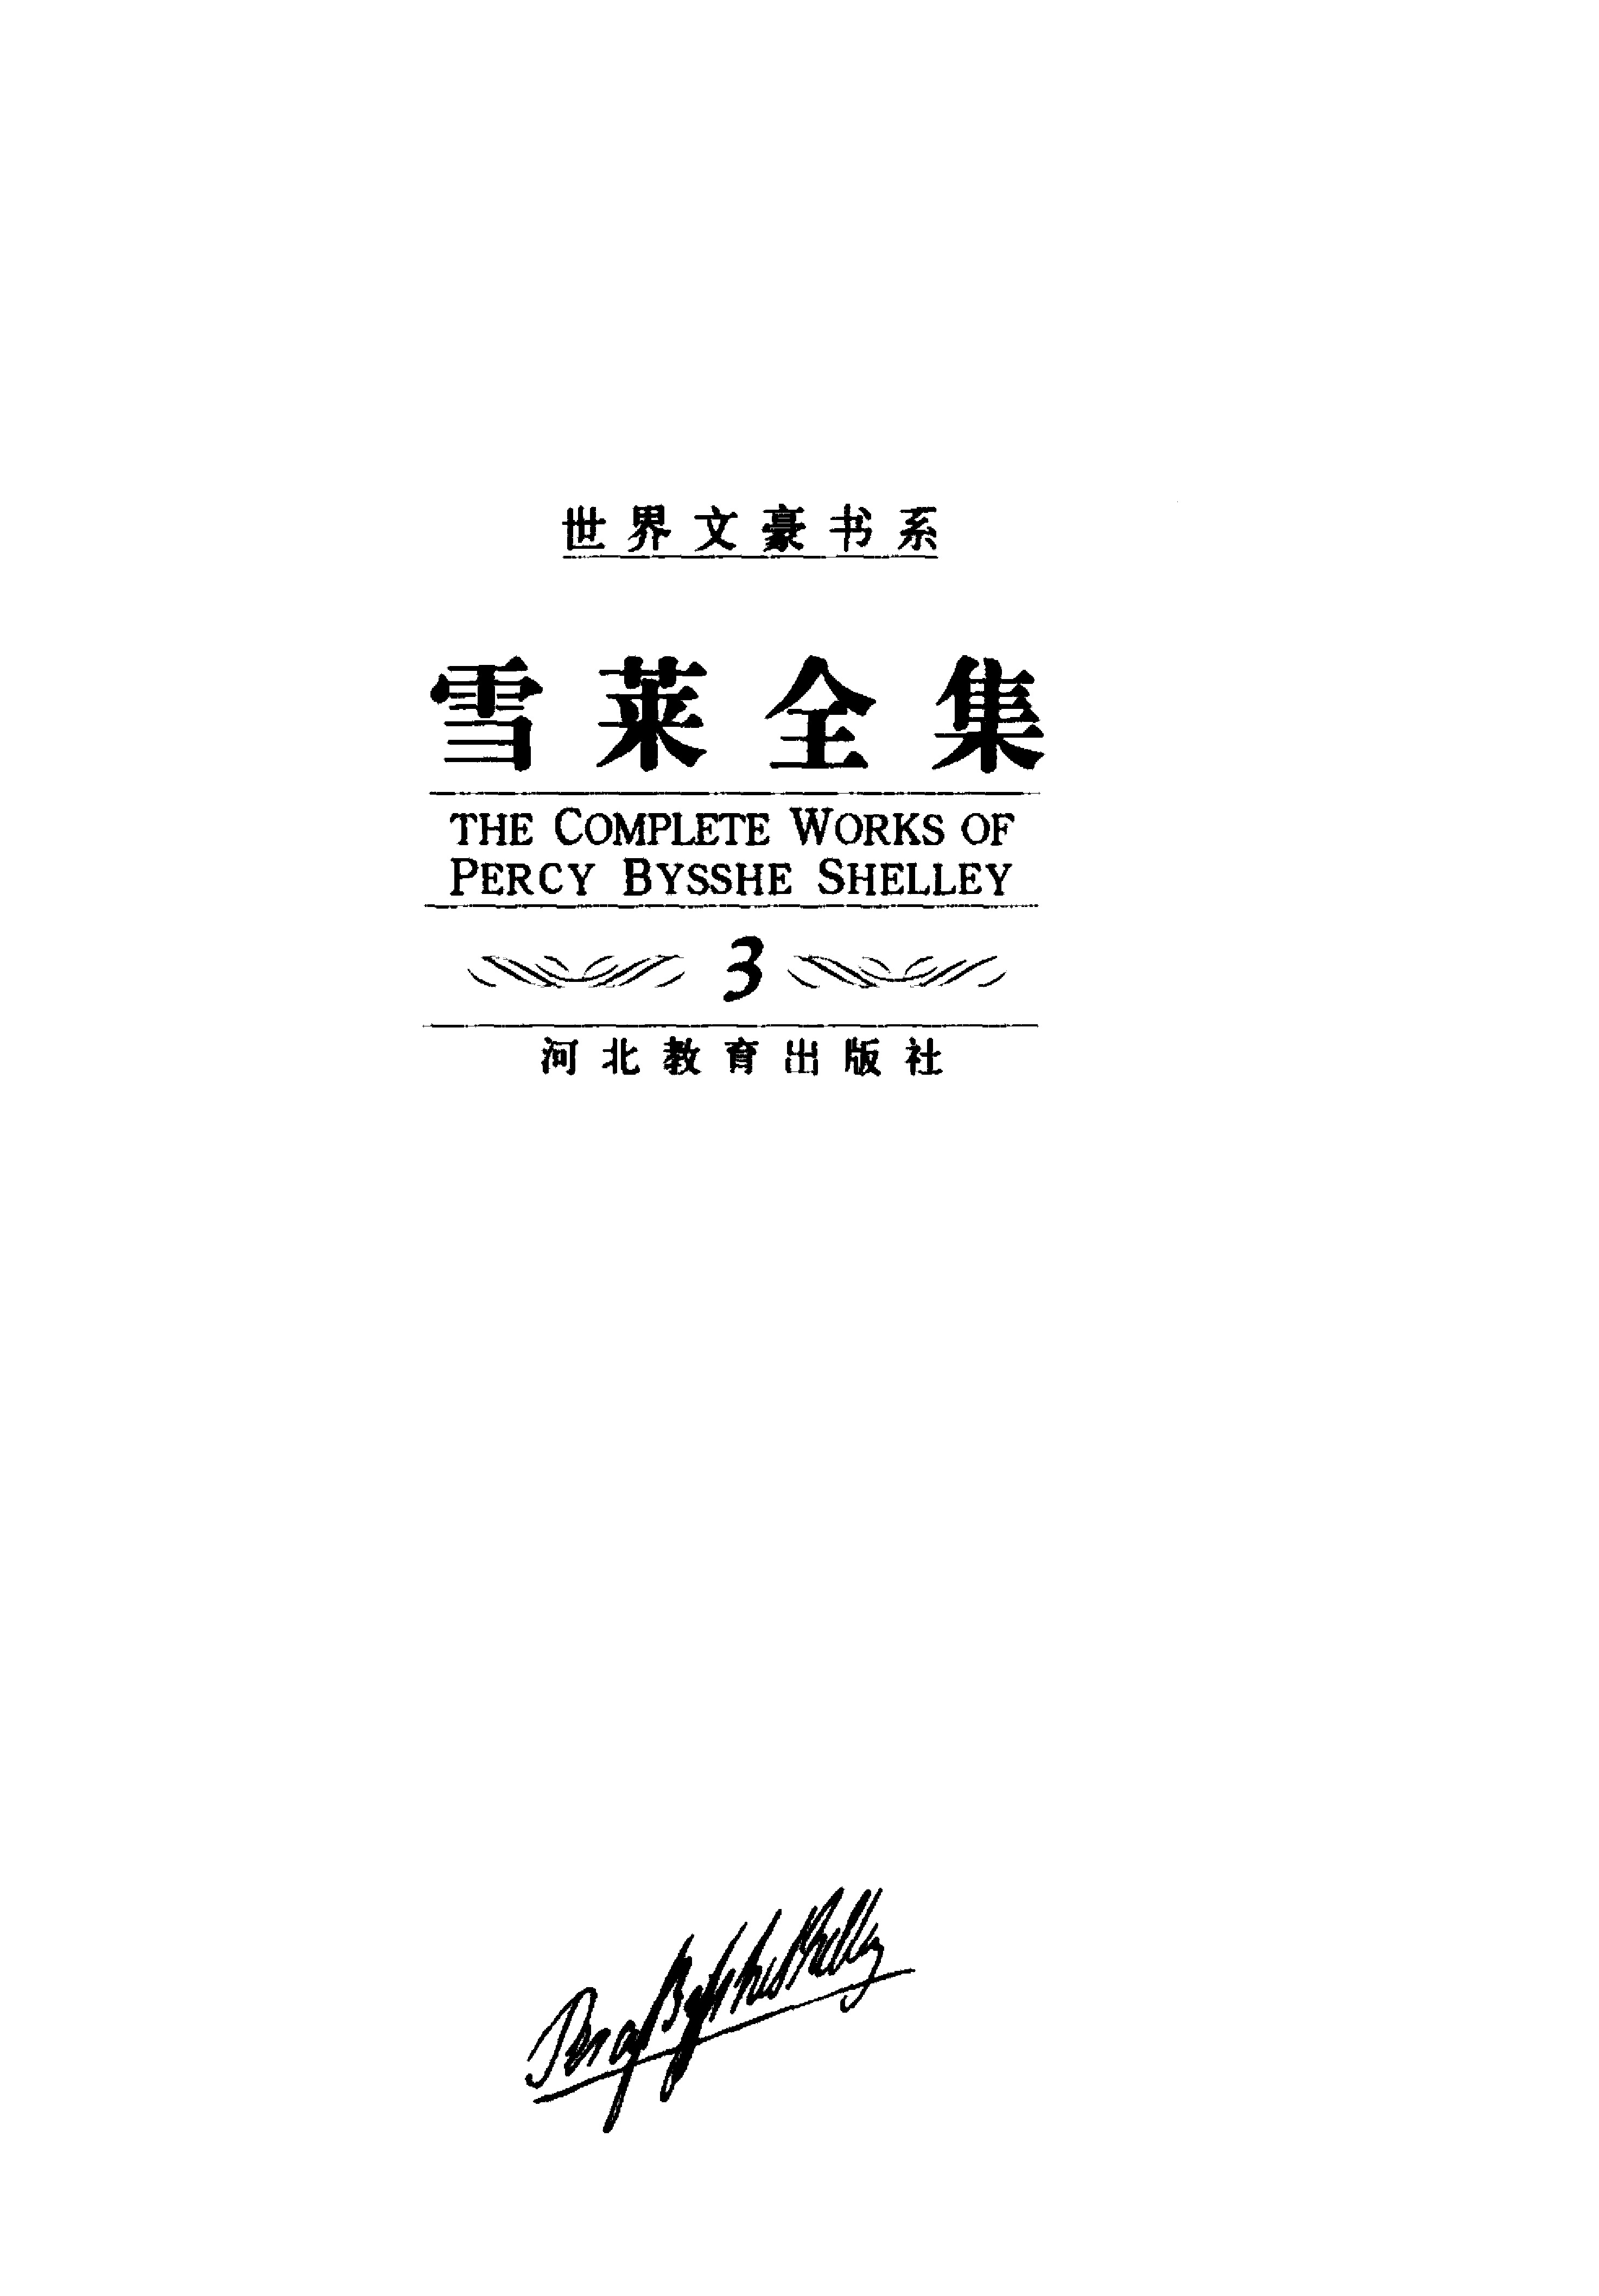 雪莱全集（第三卷）长诗-下.江枫、顾子欣译